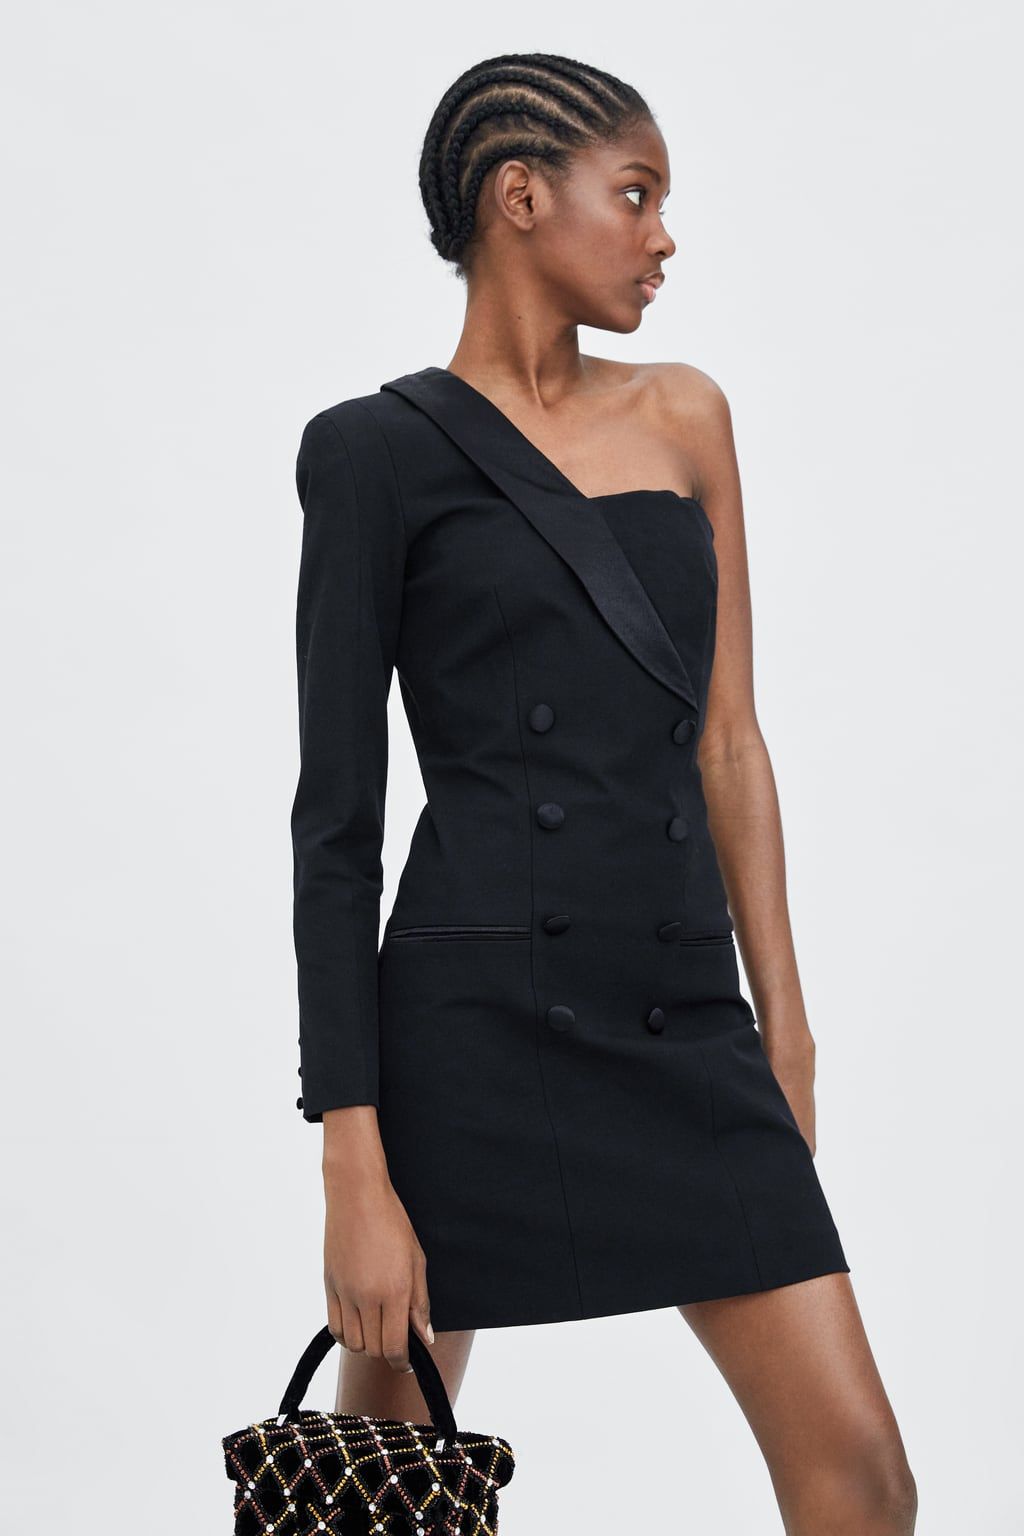 Zara tiene el vestido negro ideal (por menos de 30 euros) para lucir estas fiestas - El LBD perfecto en Zara